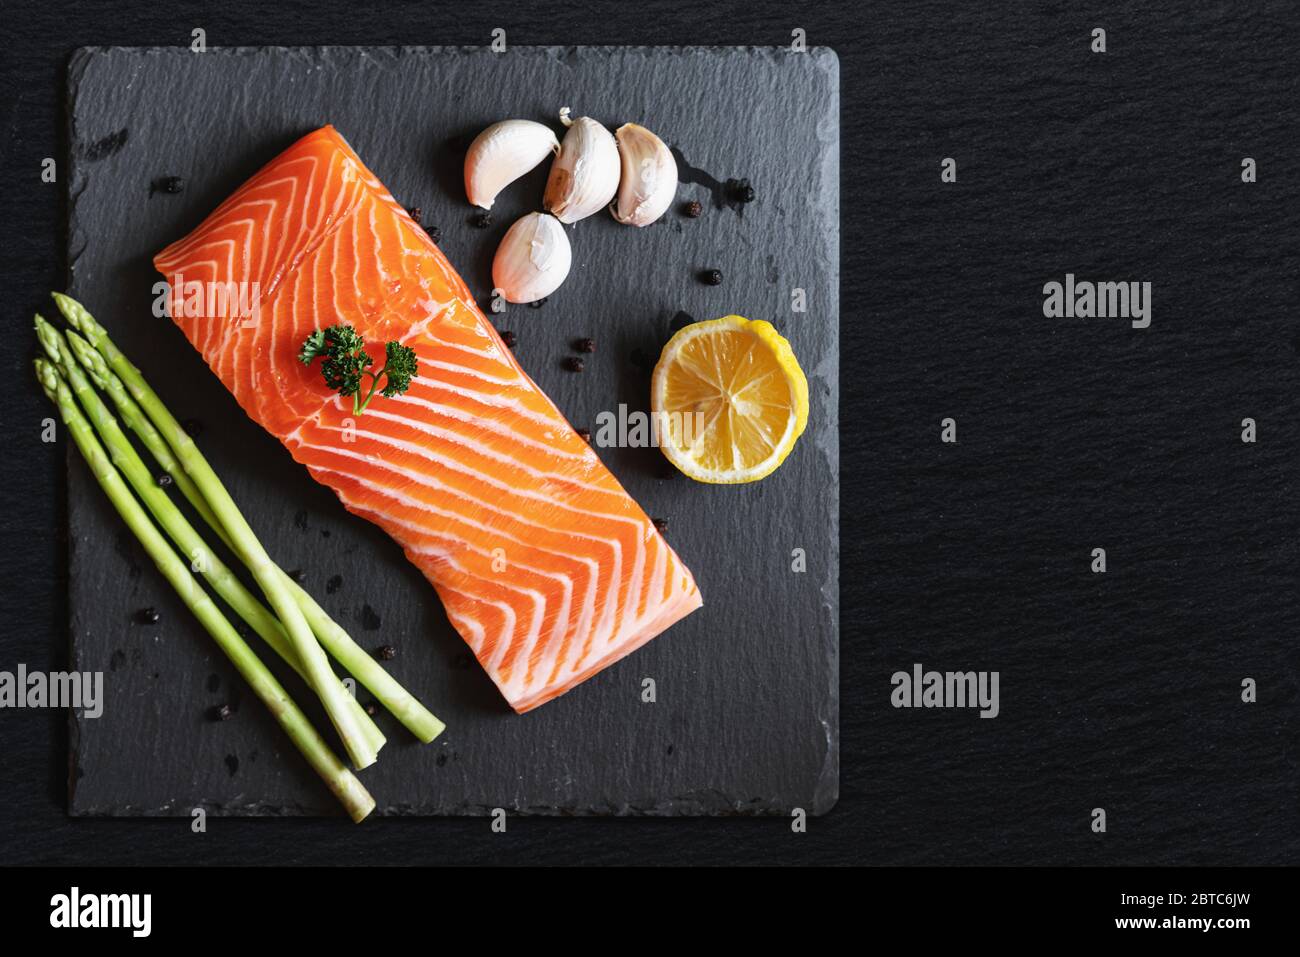 Filet de saumon frais cru avec herbes et ingrédients, sur plaque en pierre noire avec espace de copie Banque D'Images